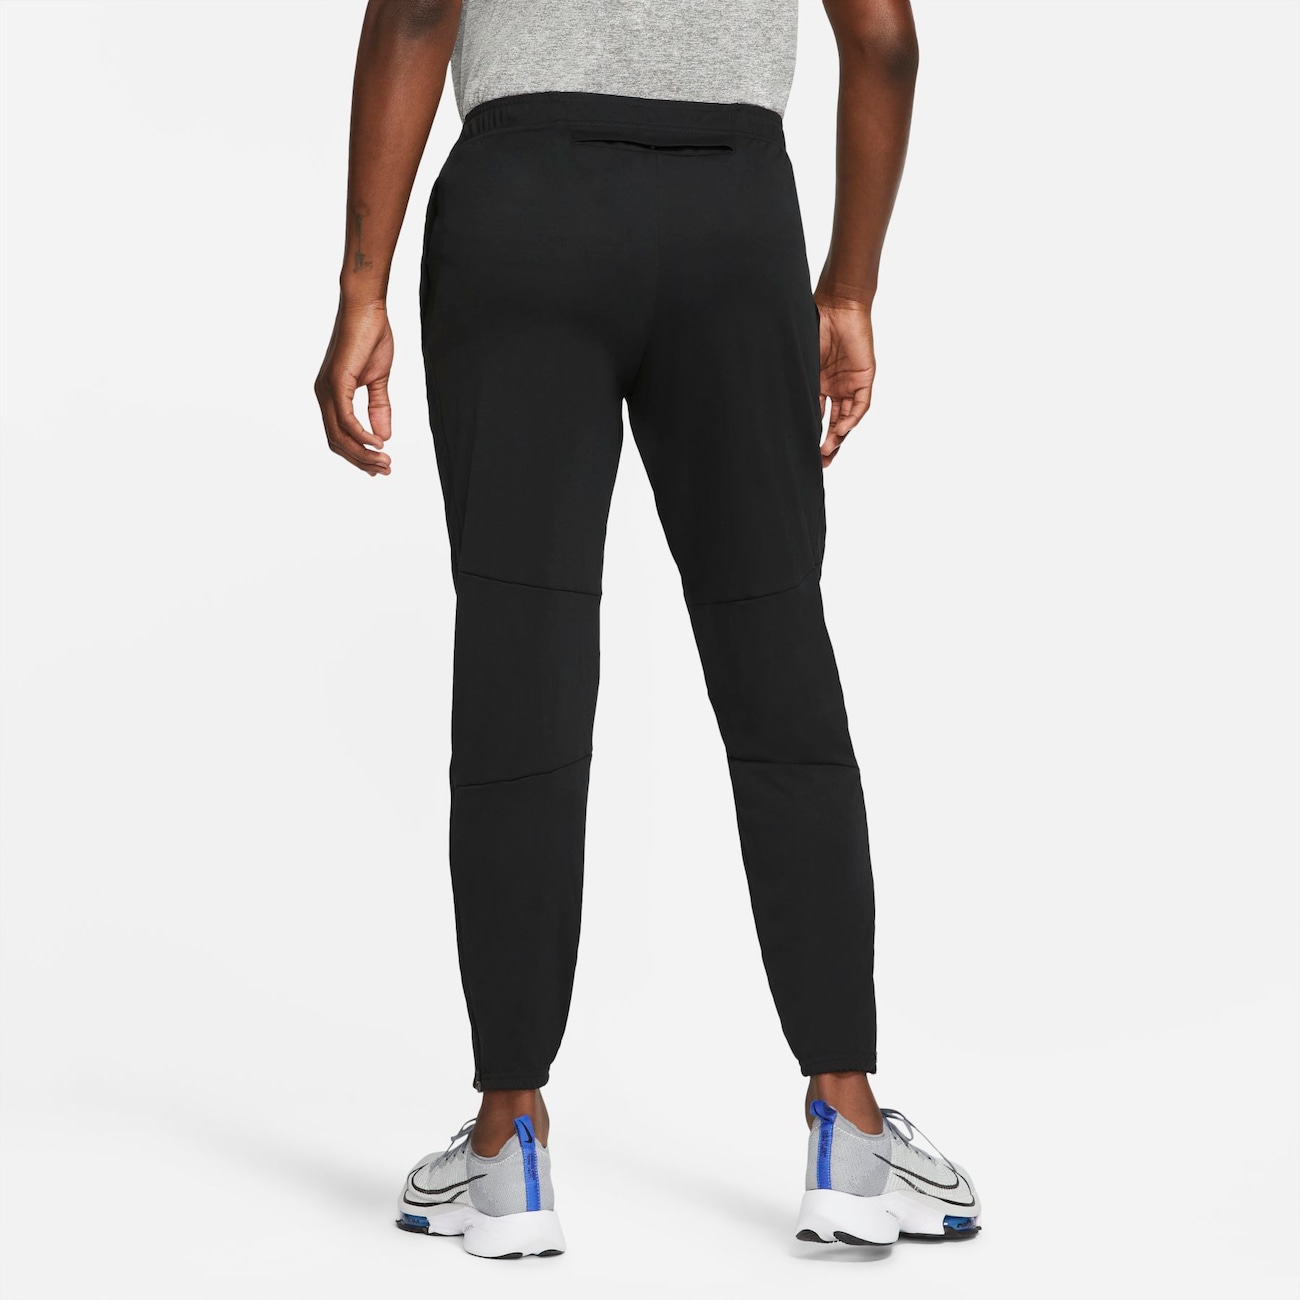 Calça Nike Dri-FIT Challenger Masculina - Foto 2